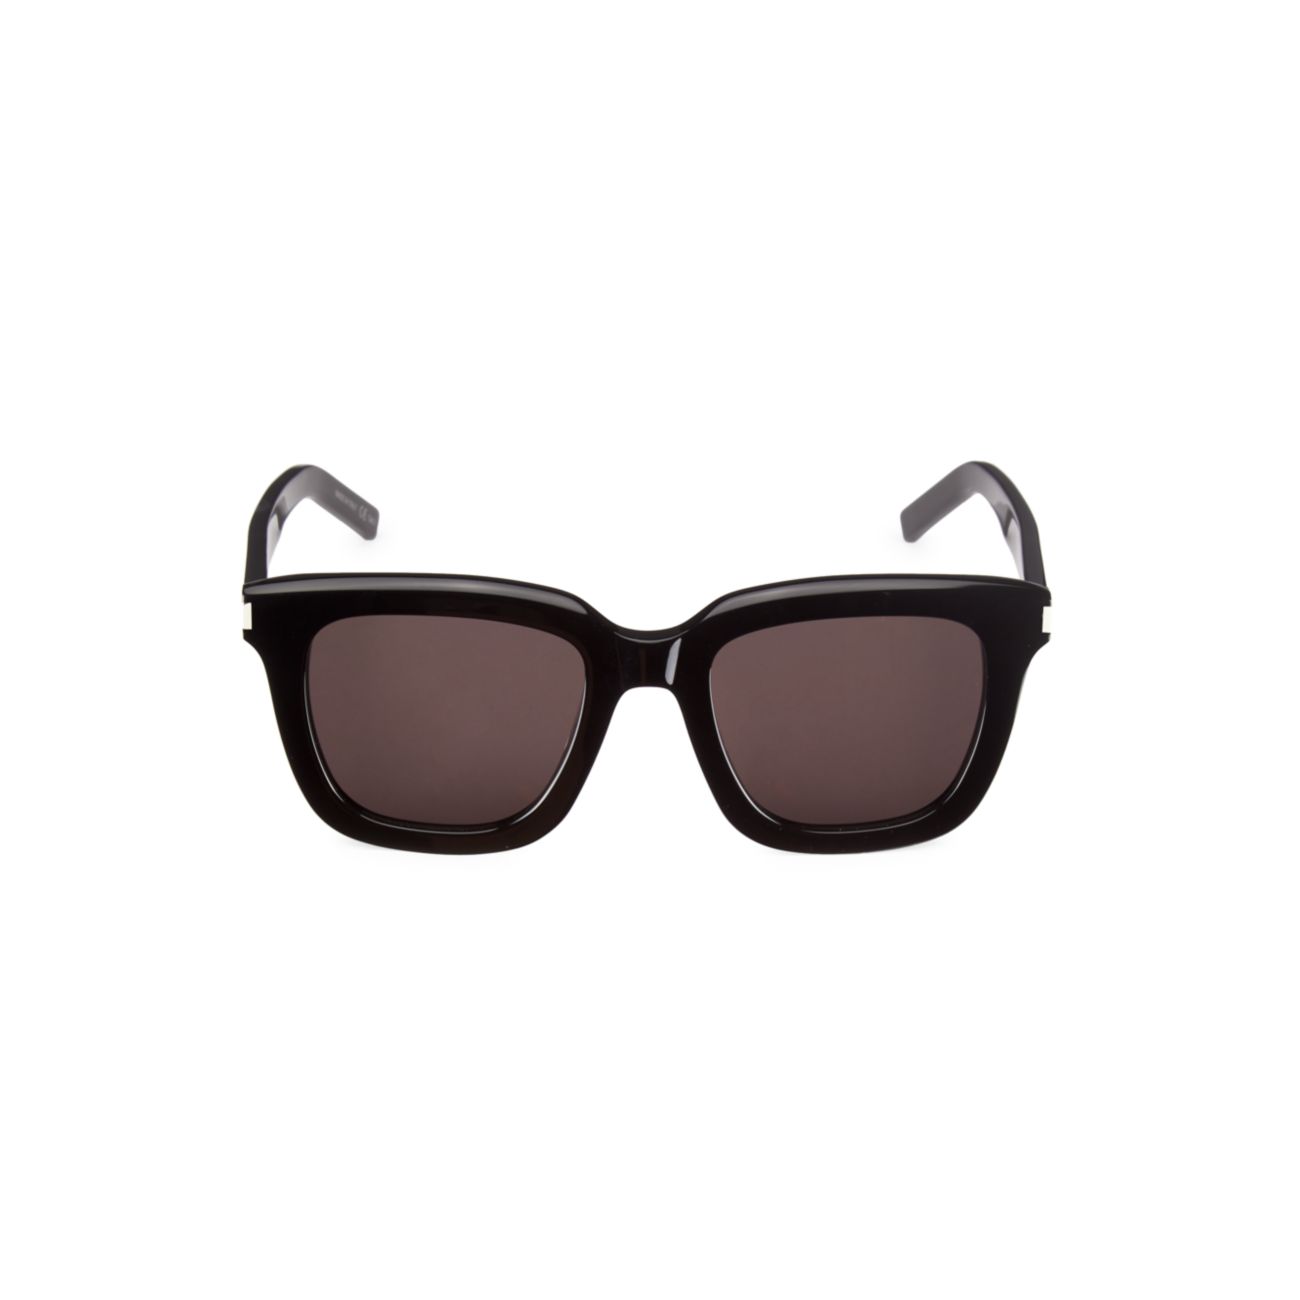 Прямоугольные солнцезащитные очки Corner Angle 51MM Saint Laurent